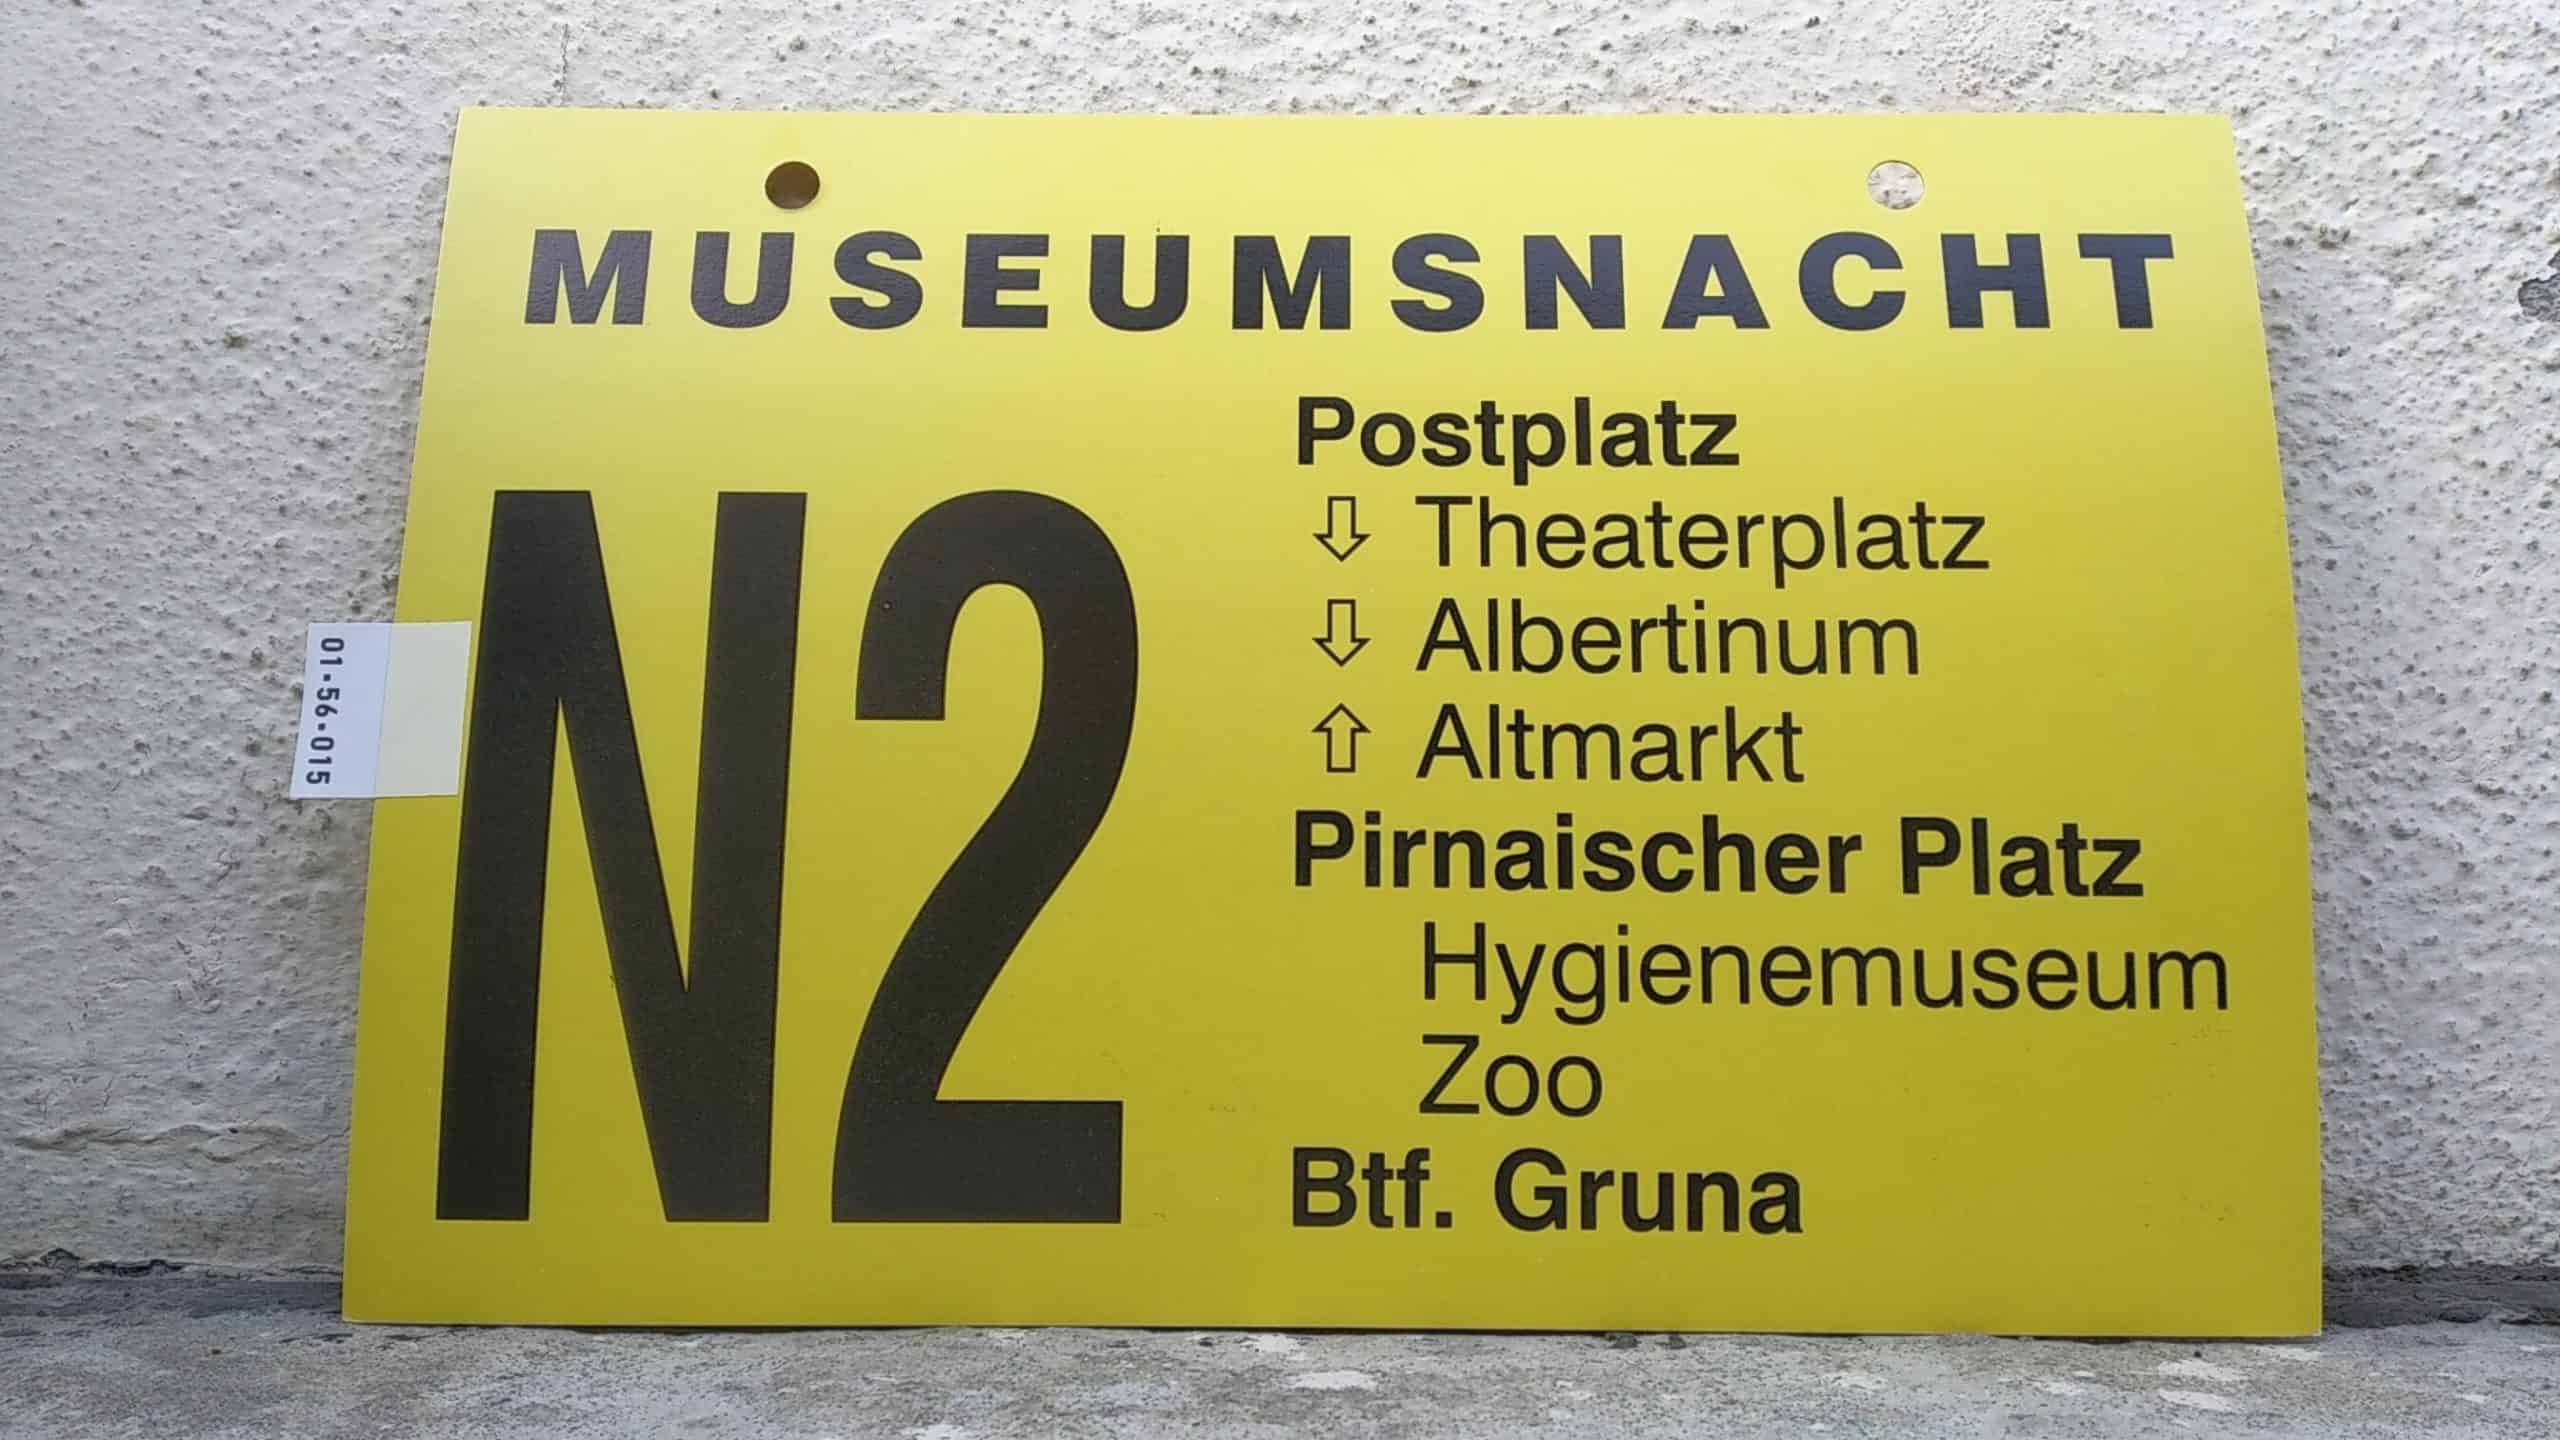 Ein seltenes Bus-Linienschild aus Dresden, anläßlich MUSEUMSNACHT N2 Postplatz - Btf. Gruna